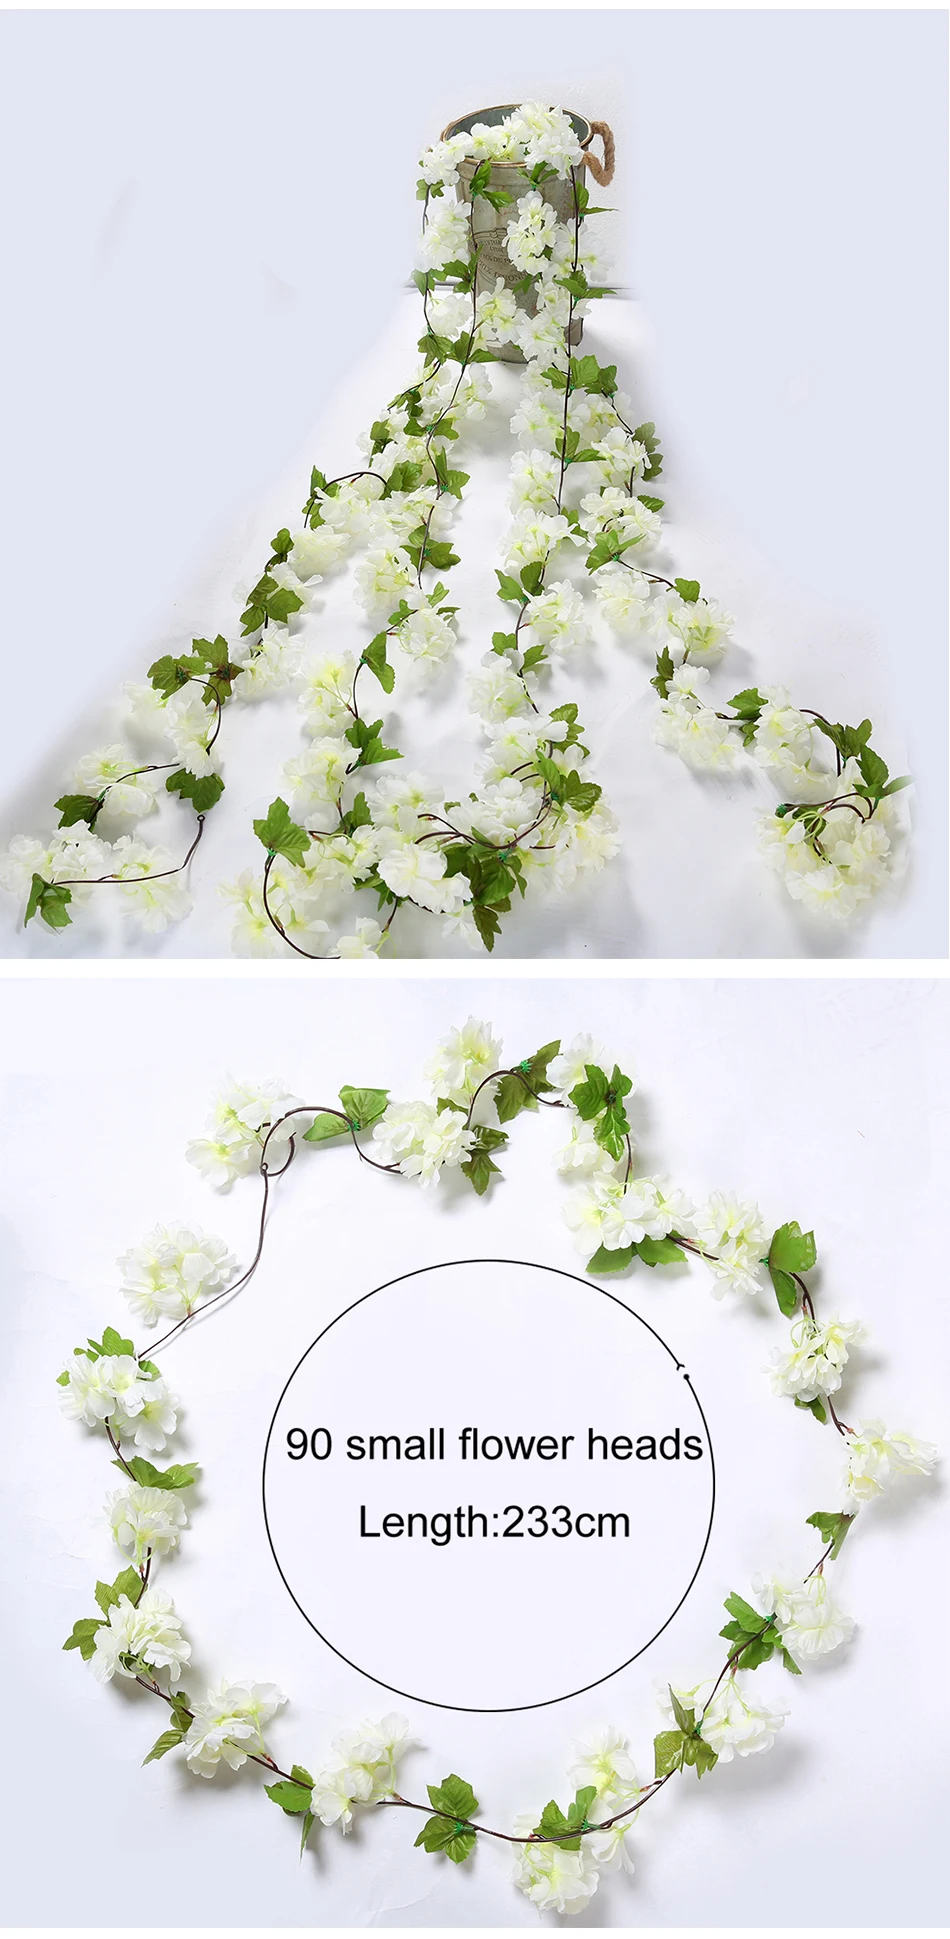 CHENCHENG 11 шт./лот 233 см искусственные цветки вишни Шелковый Искусственный цветок лоза ротанга настенные подвесные Свадебные украшения